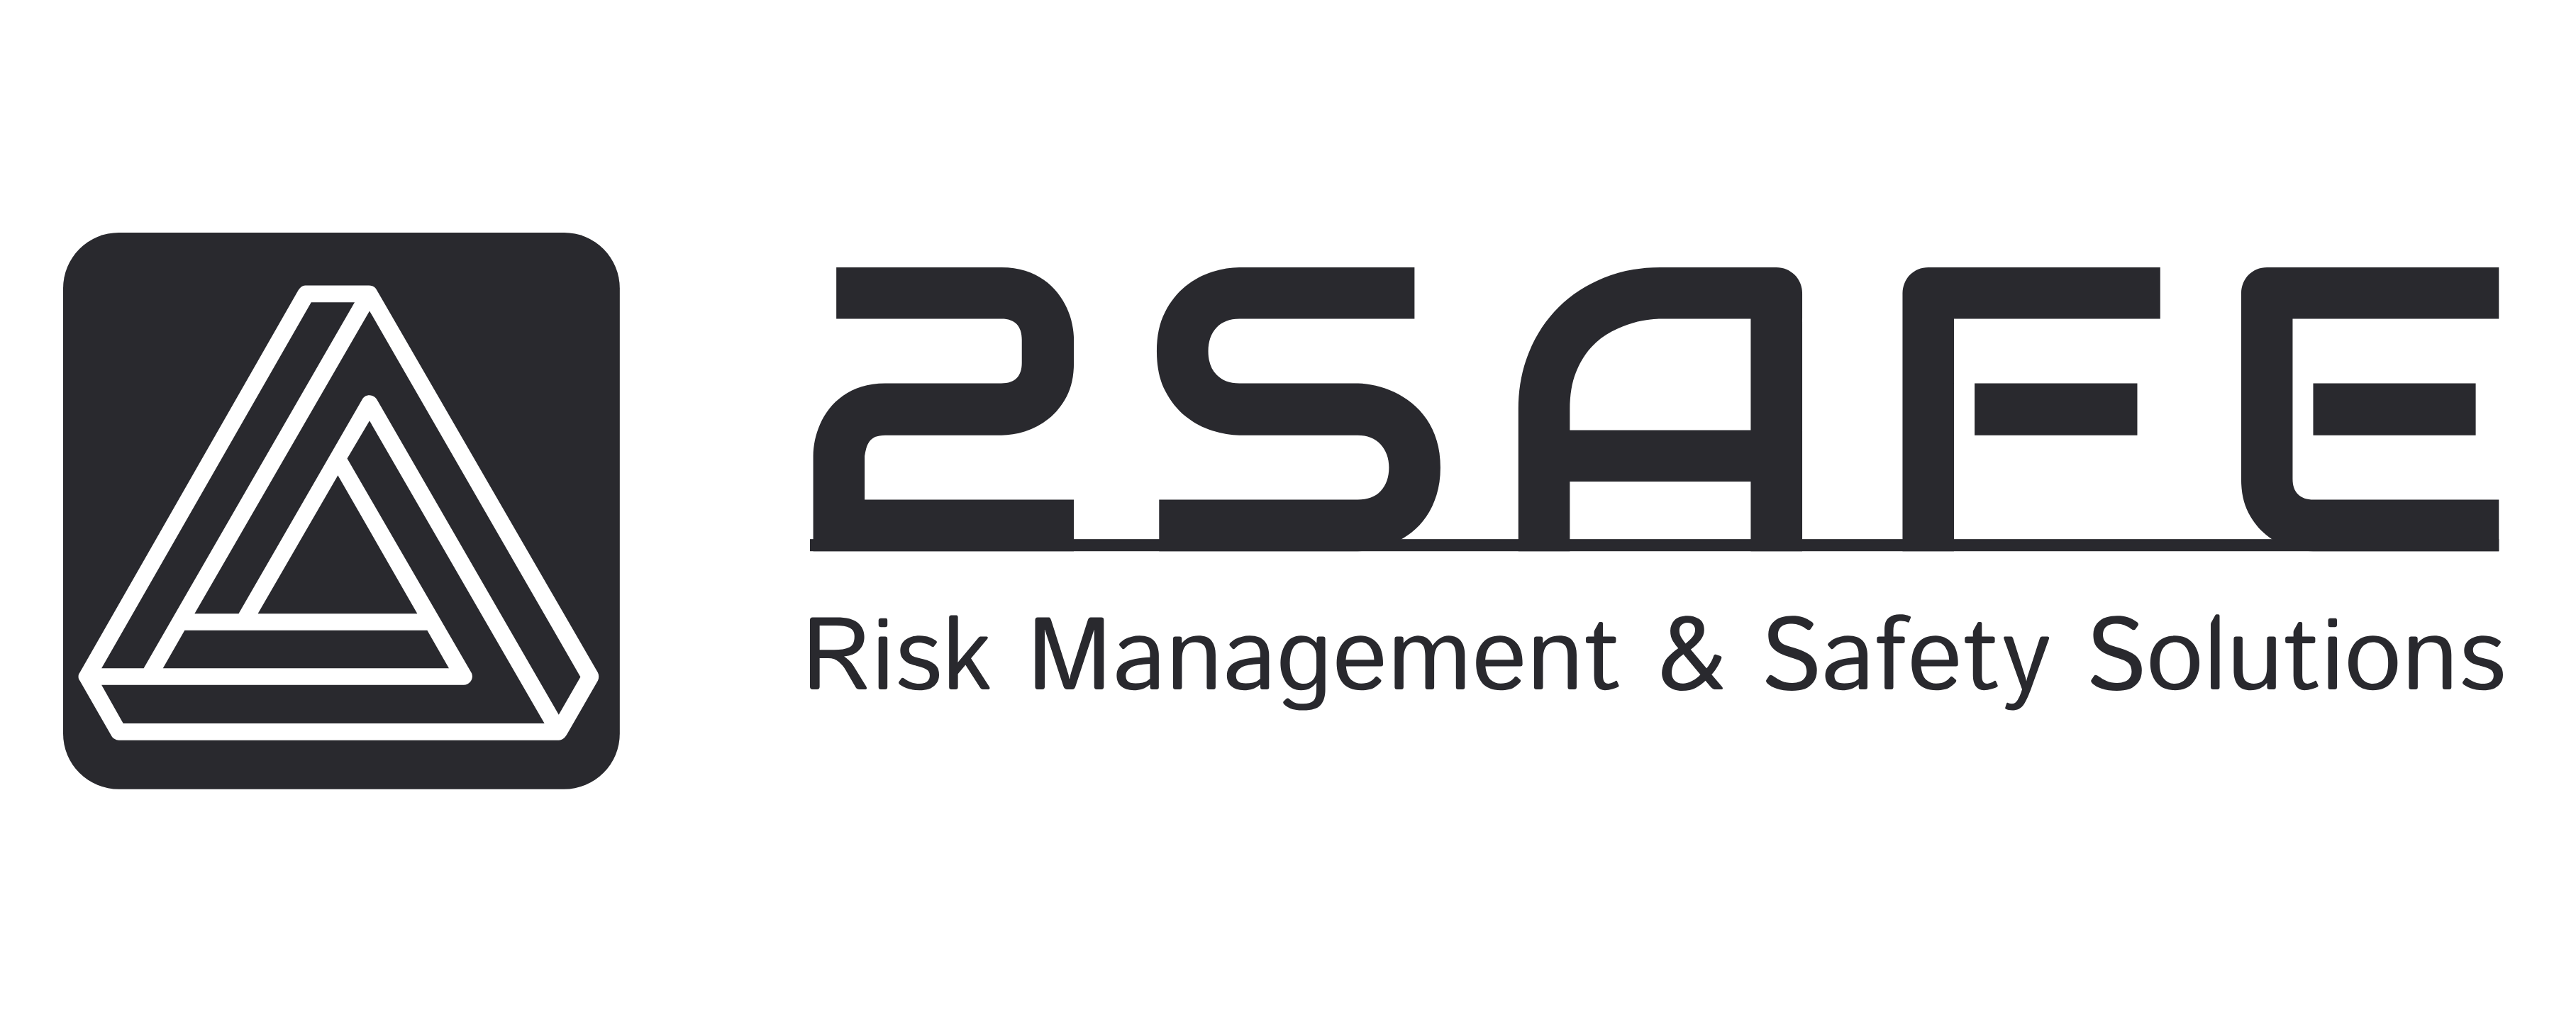 2safe.at - RISK MANAGEMENT & SAFETY SOLUTIONS